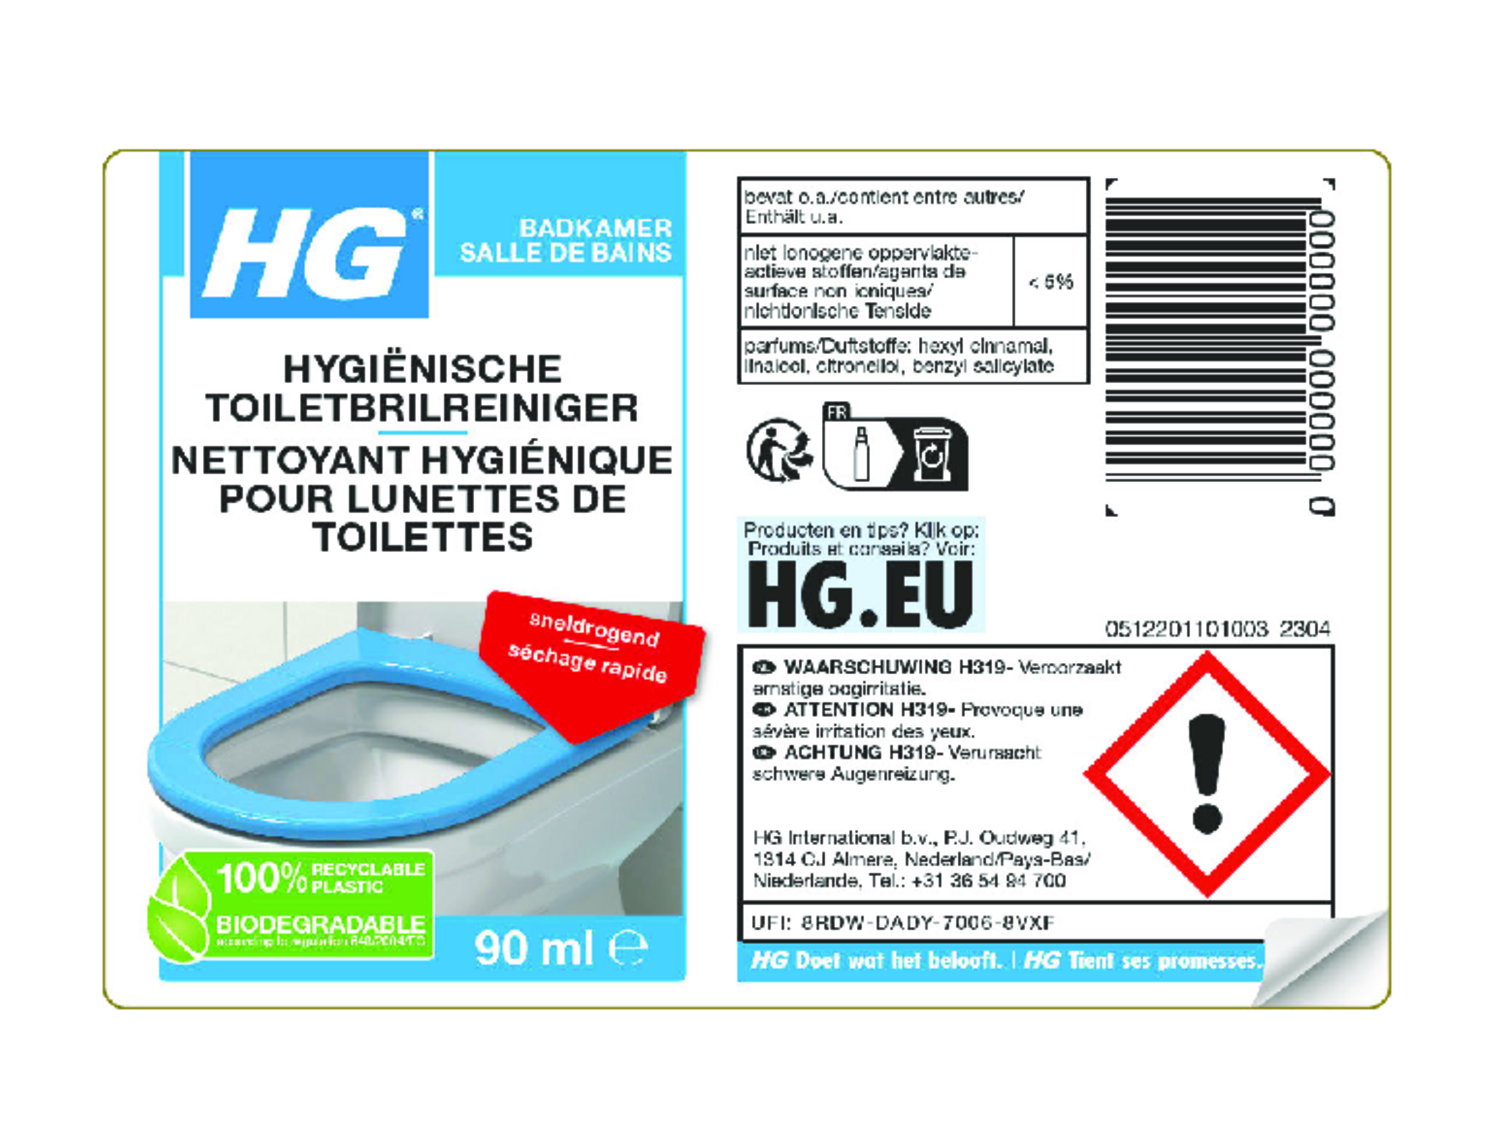 Hygiënische Toiletbrilreiniger afbeelding van document #1, etiket